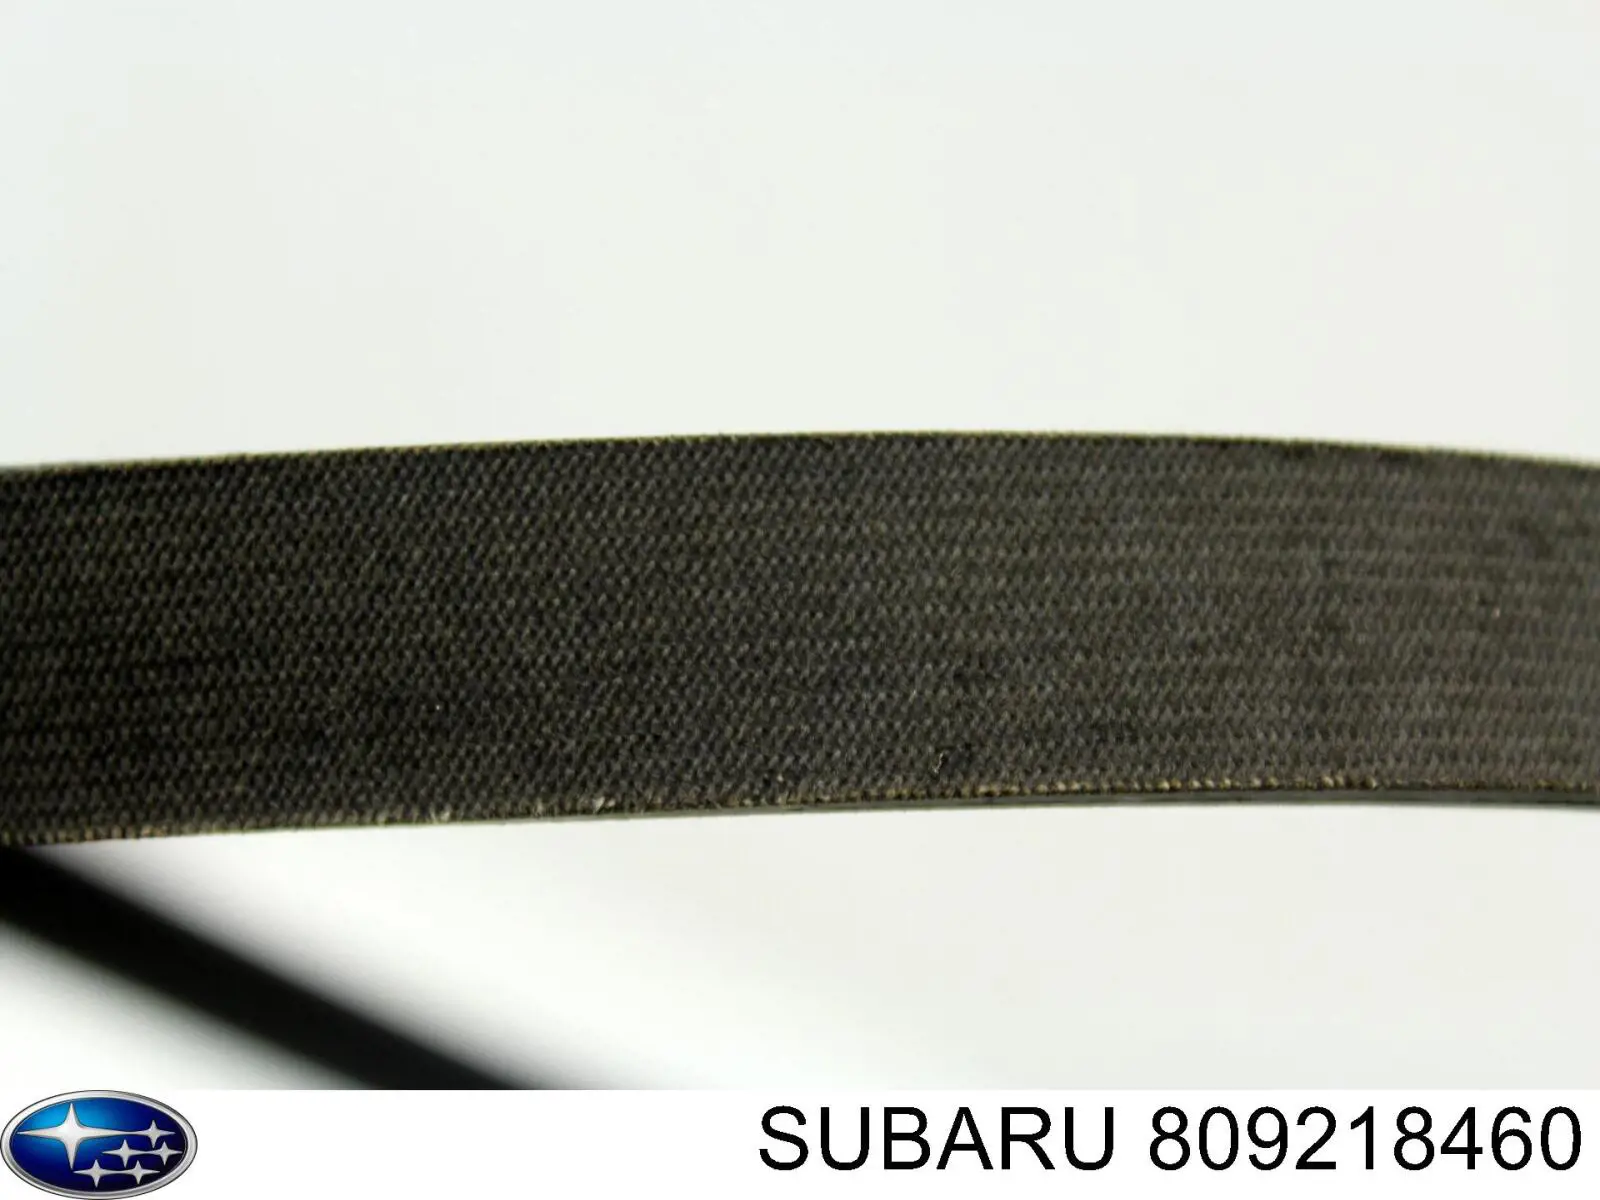 809218460 Subaru correa trapezoidal